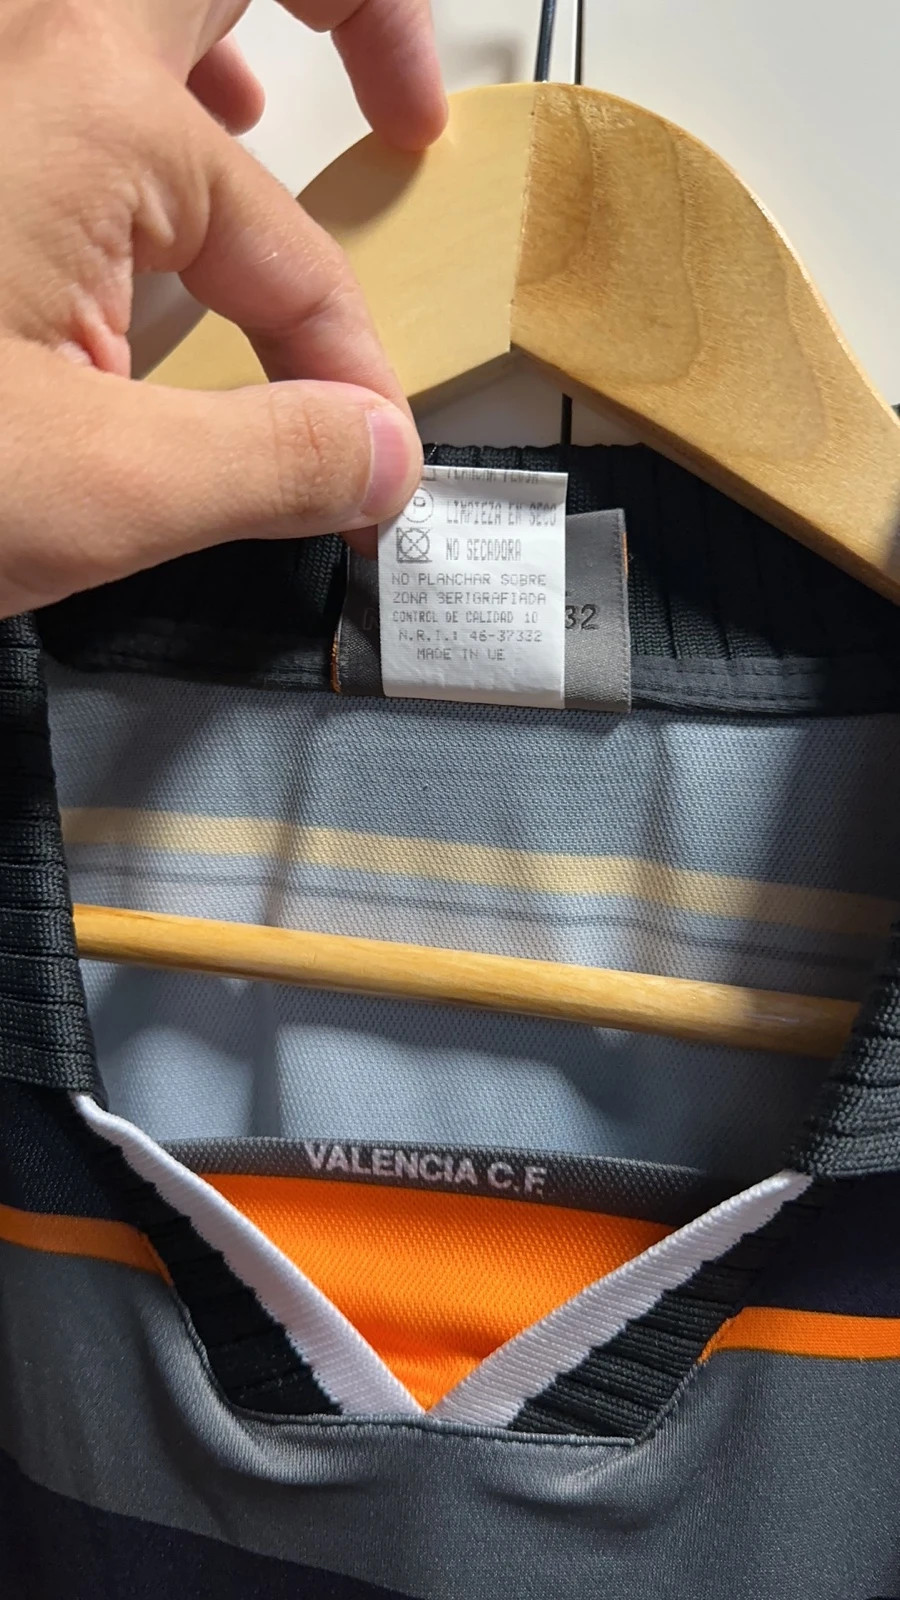 Camiseta Valencia CF 1999-2000-2001 Local – Camisetas Futbol y Baloncesto